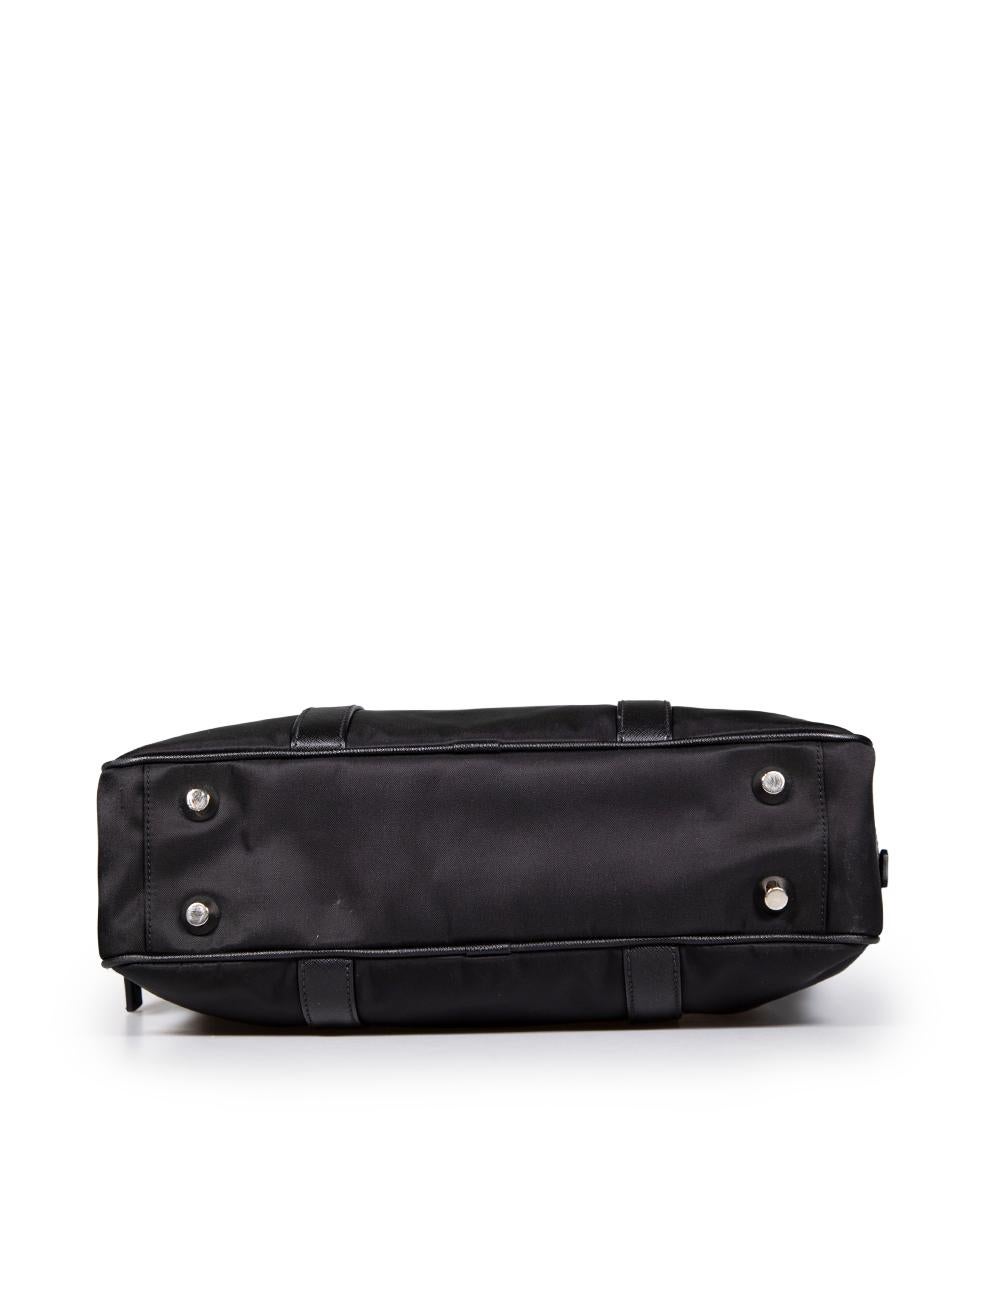 Women's Prada Black Tessuto Saffiano Trim Handbag For Sale